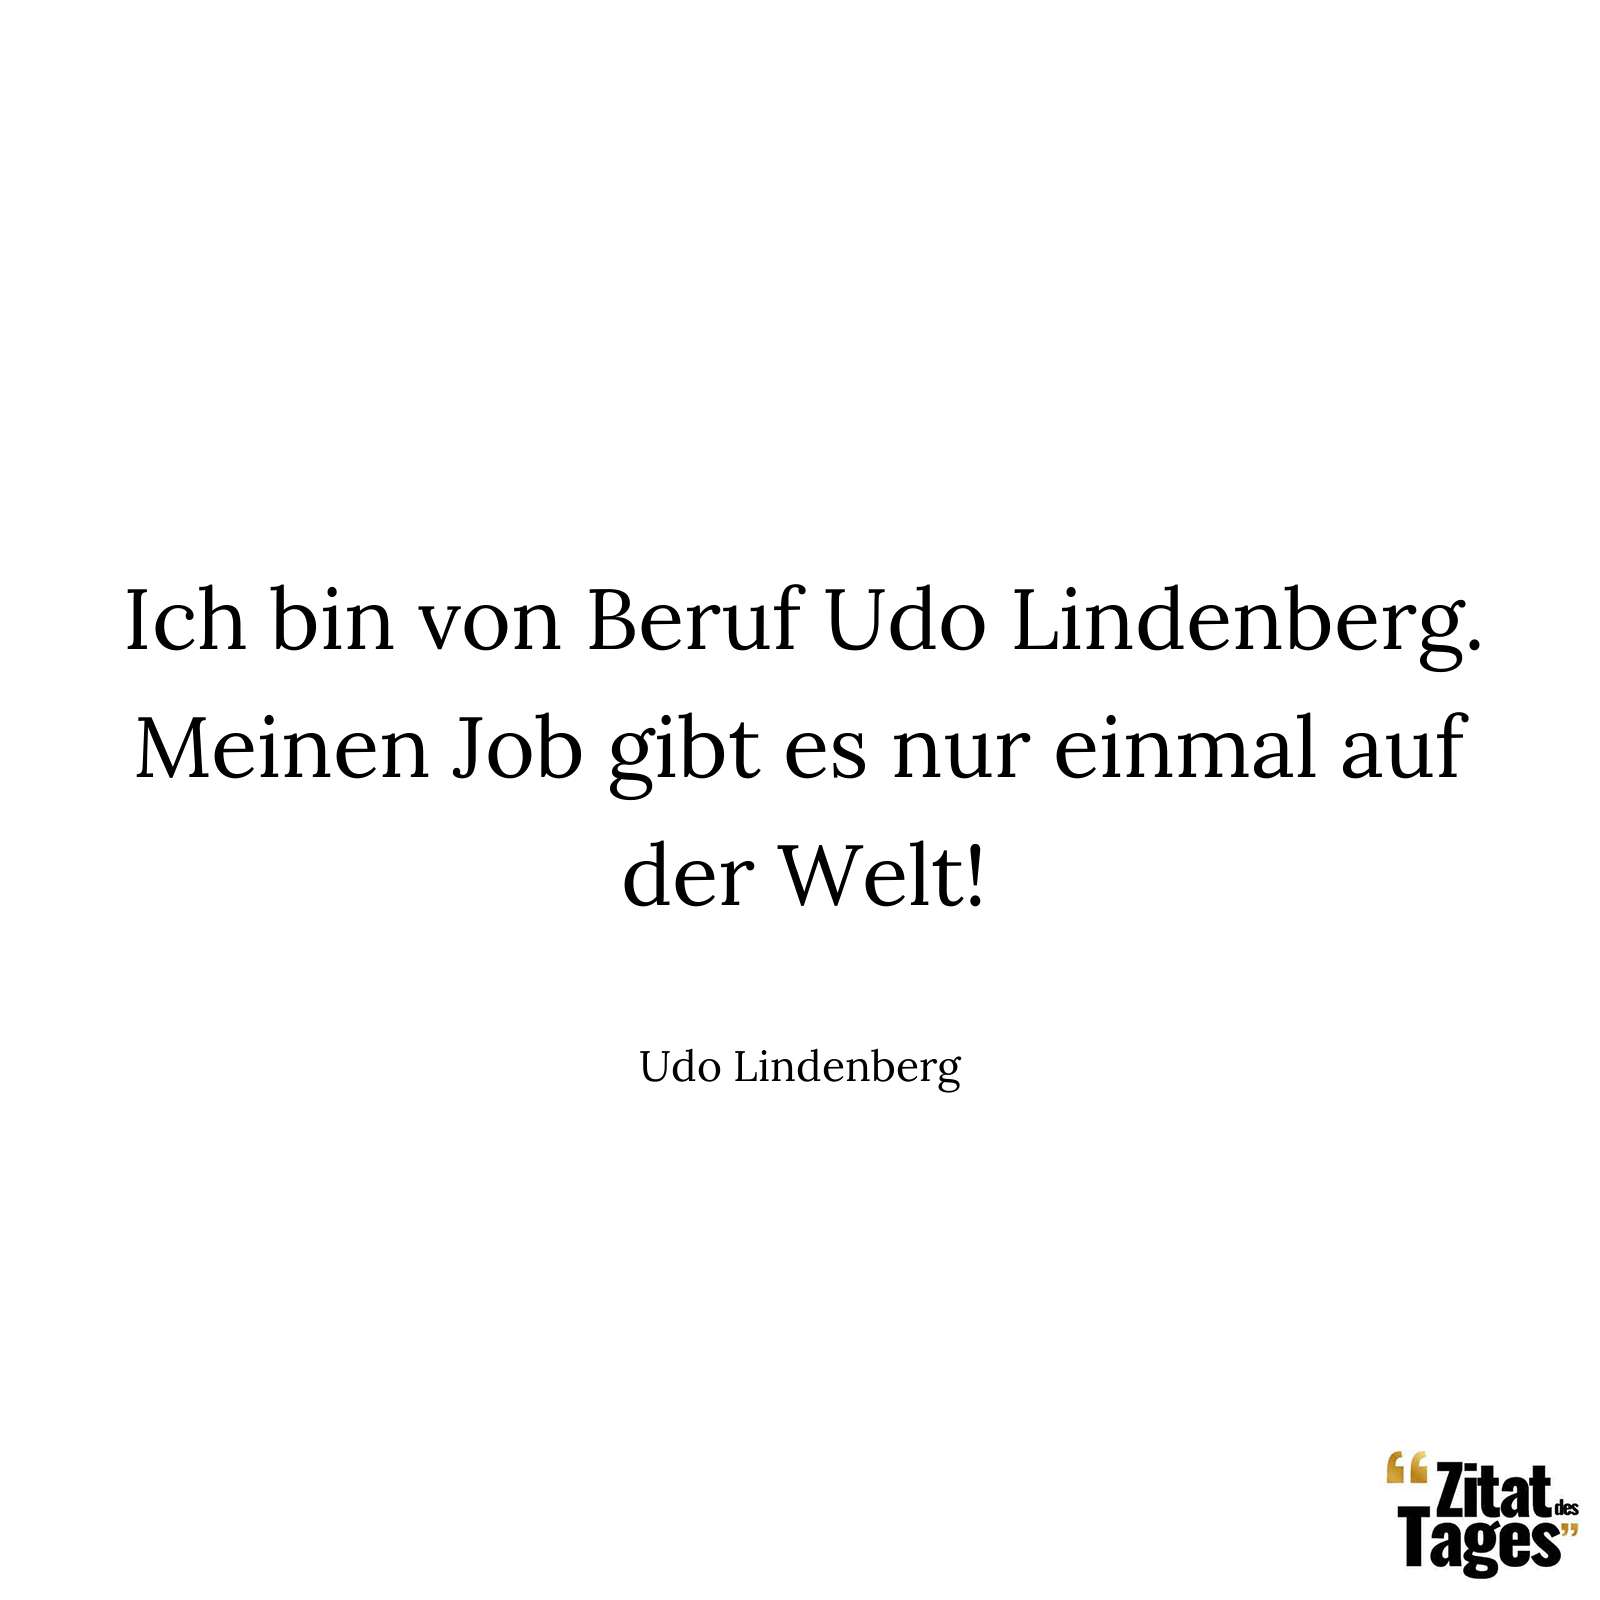 Ich bin von Beruf Udo Lindenberg. Meinen Job gibt es nur einmal auf der Welt! - Udo Lindenberg